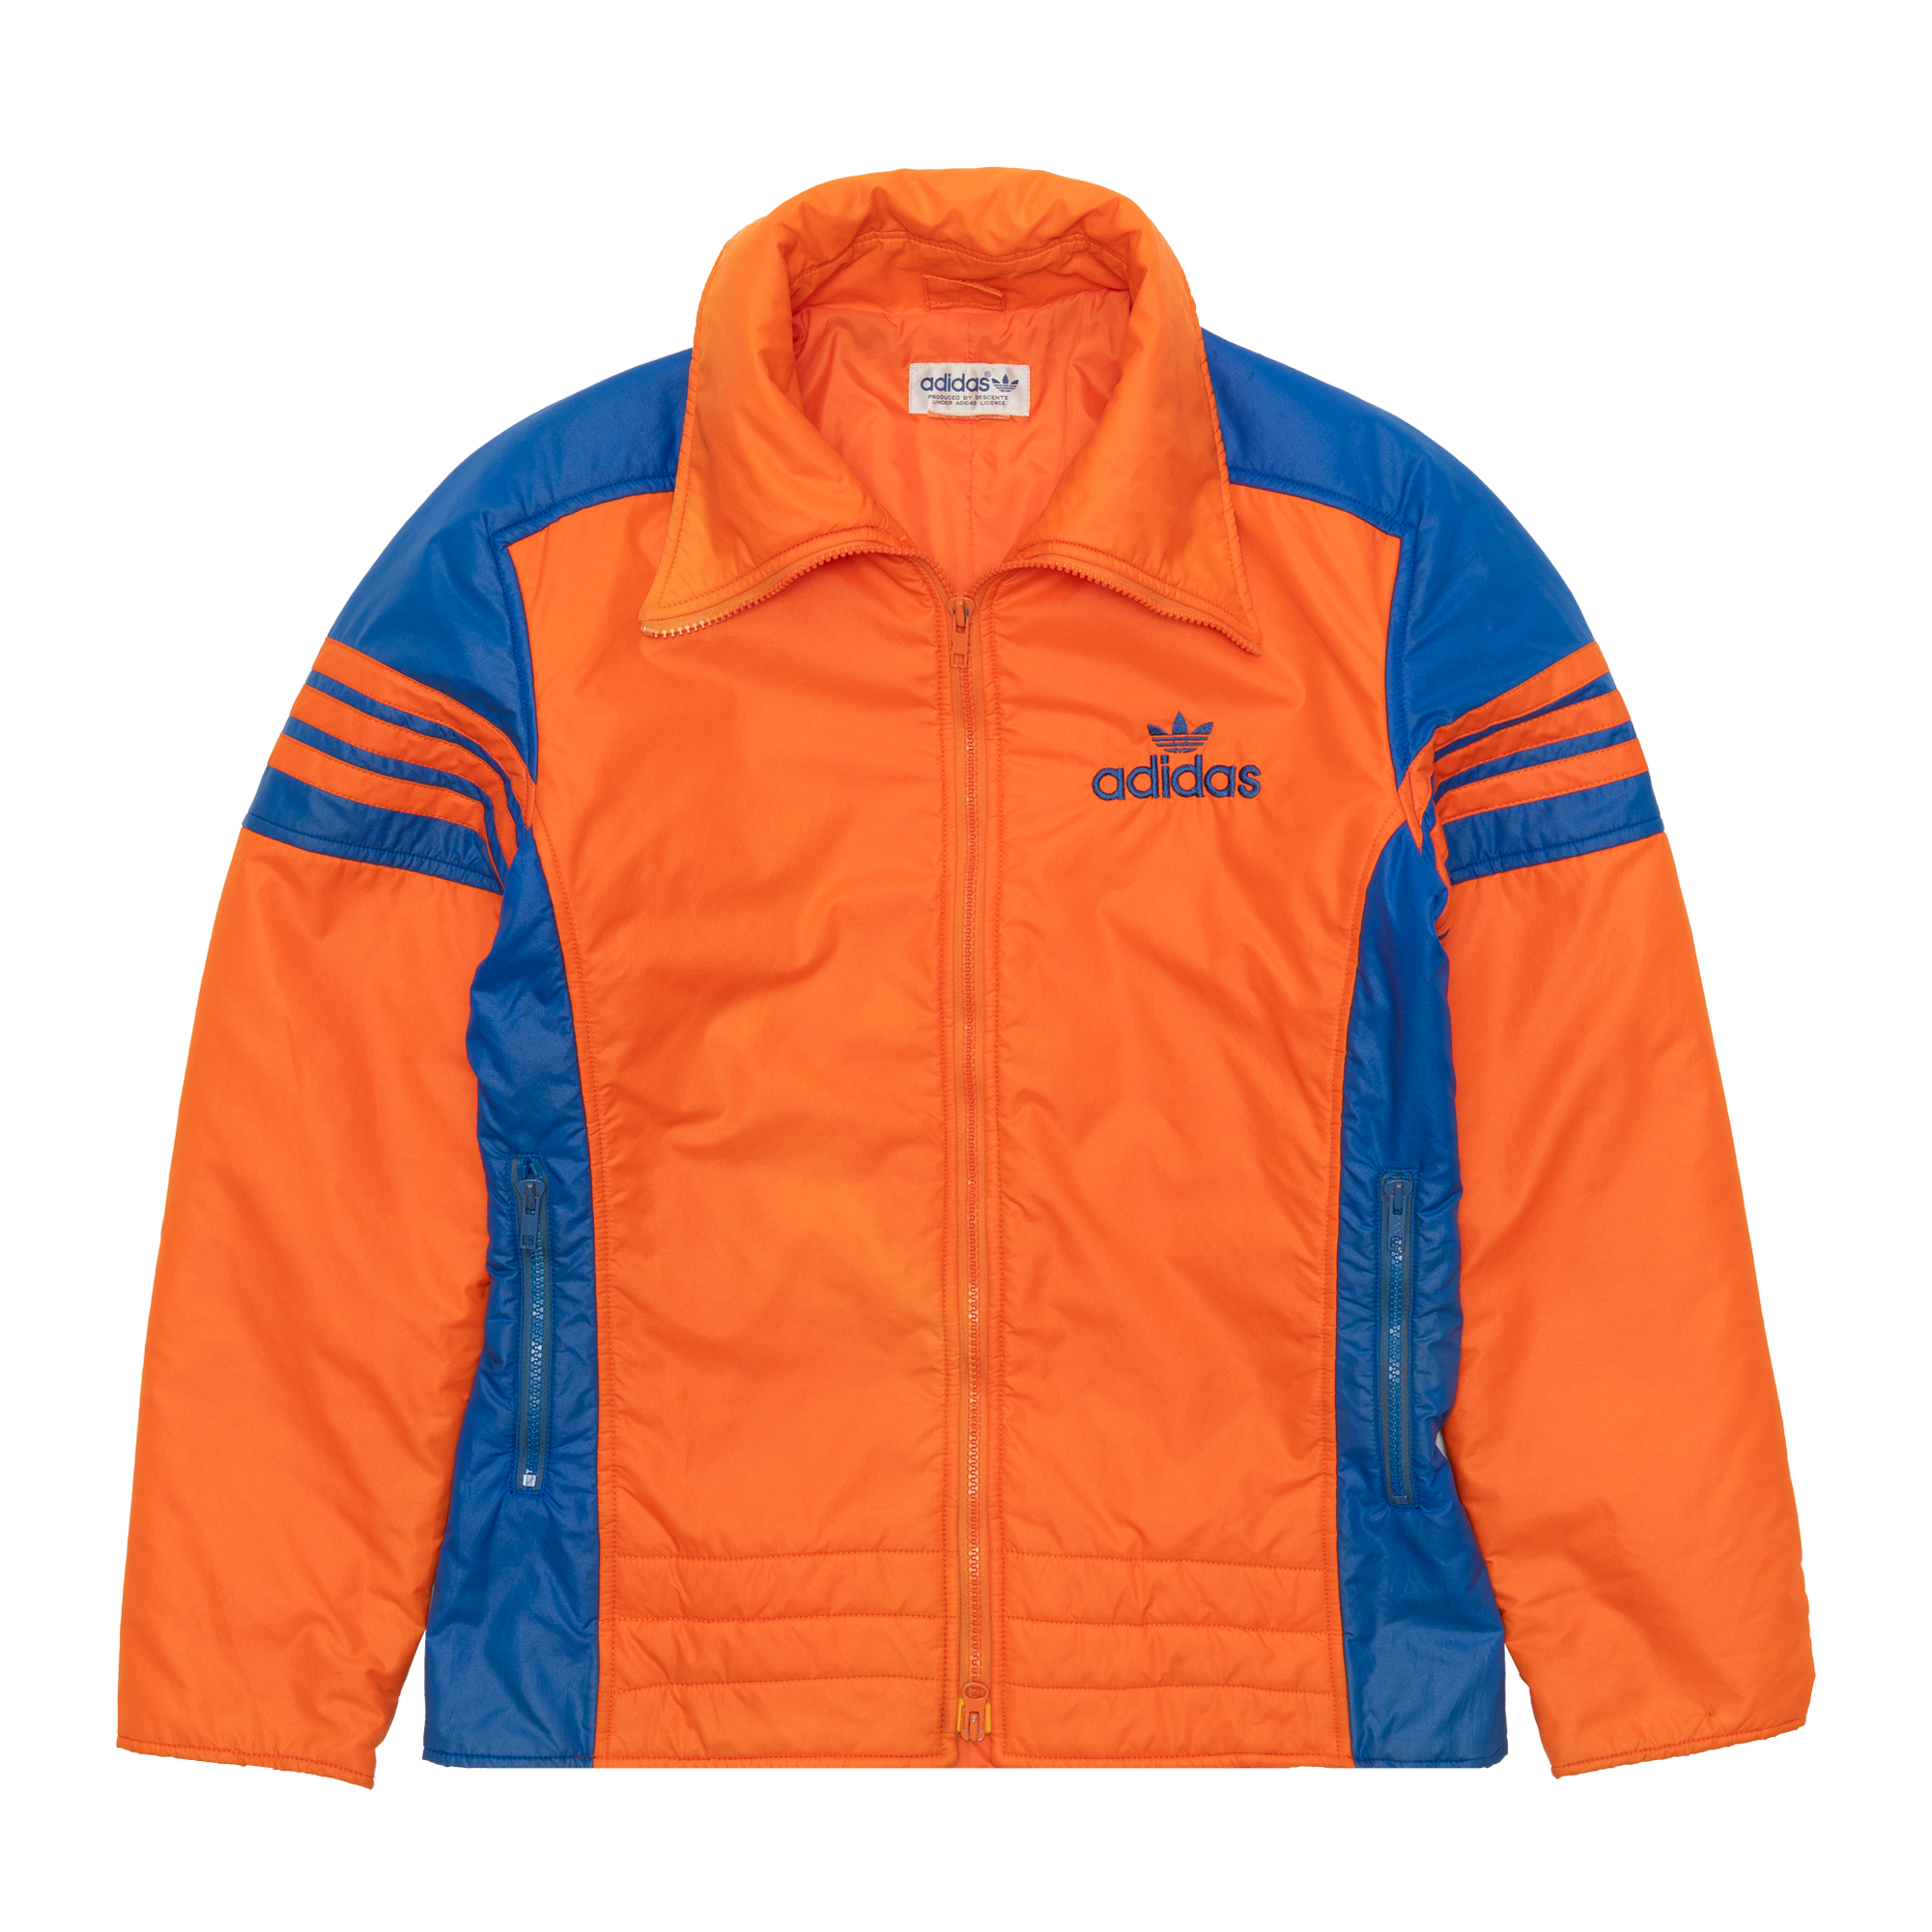 Adidas Zip Up Jacket Orange-PLUS